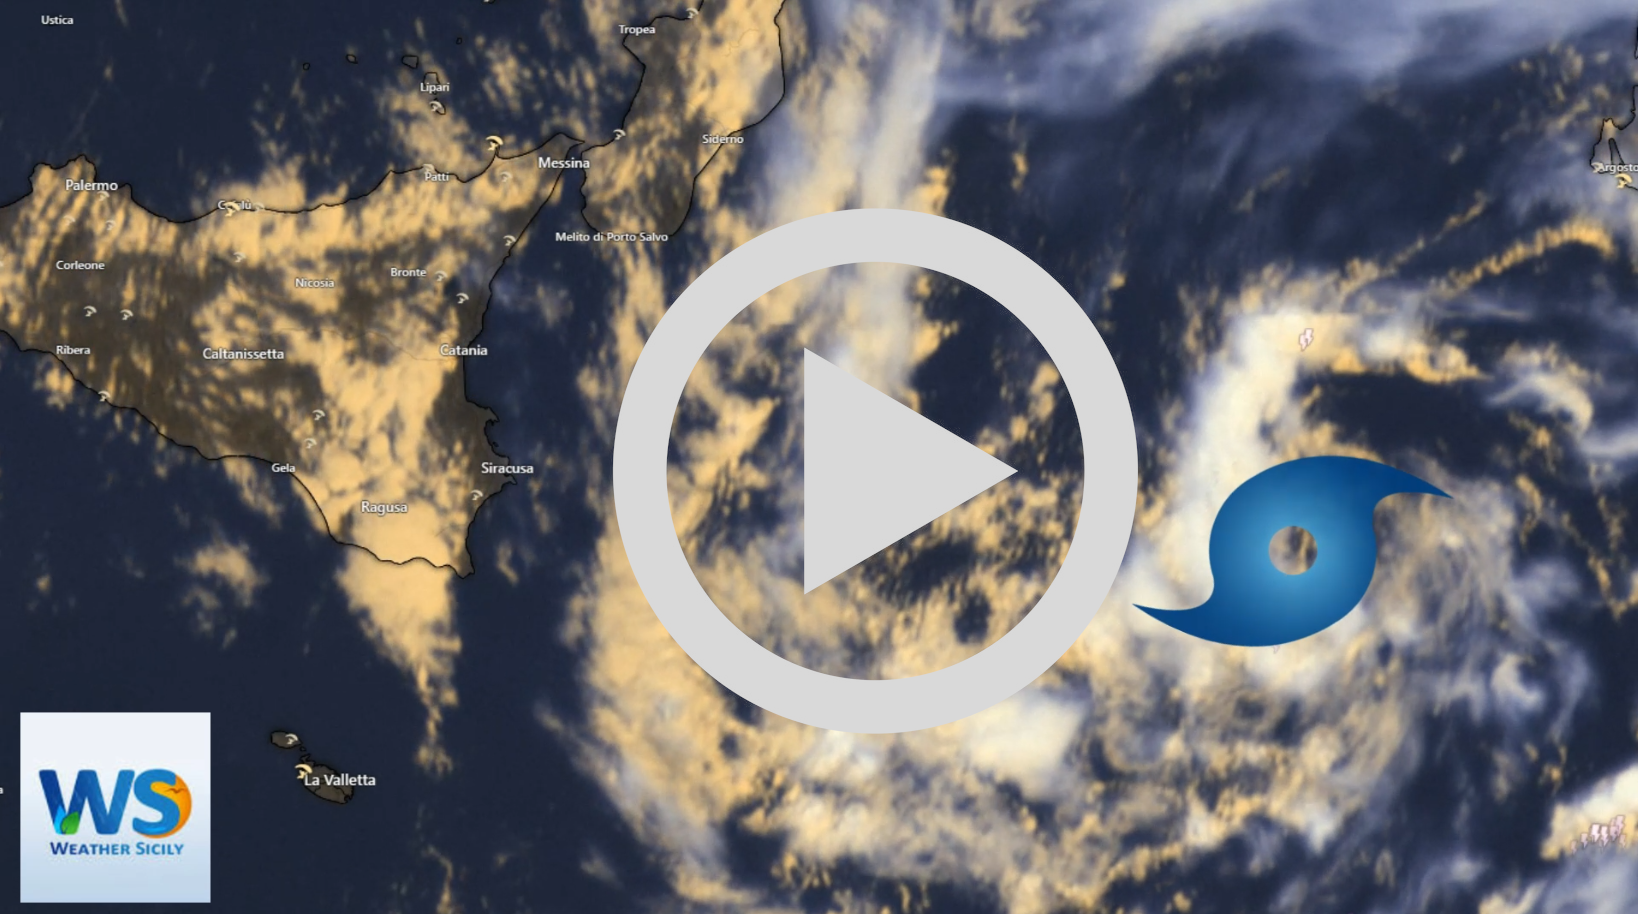 Meteo Sicilia: Le spettacolari immagini da satellite del ciclone in intensificazione al largo del Mar Ionio [VIDEO]